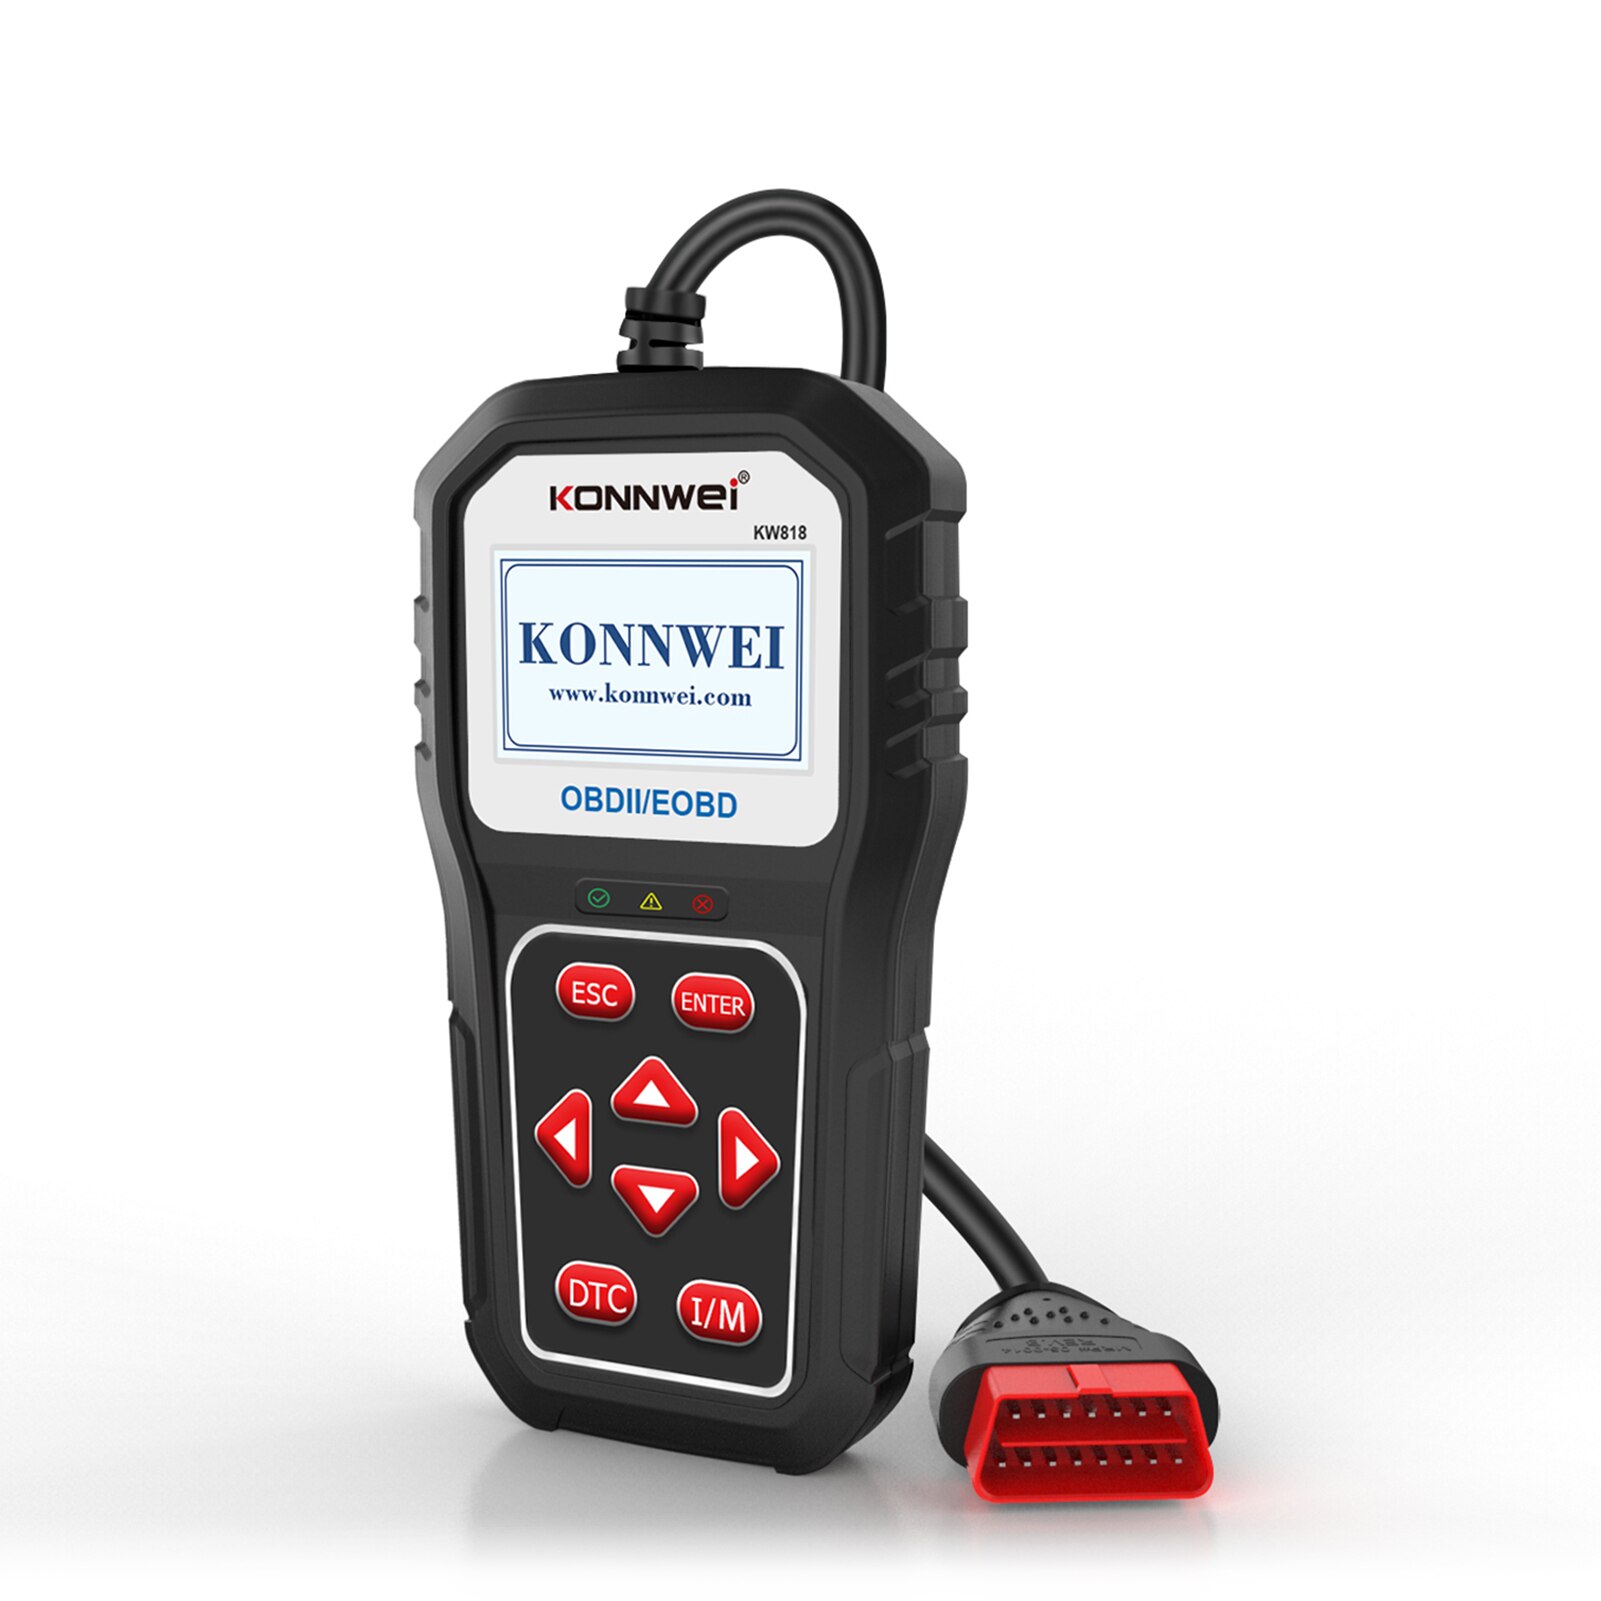 Konnwei kw818 obd2 herramienta de diagnóstico de vehículos de escaneo